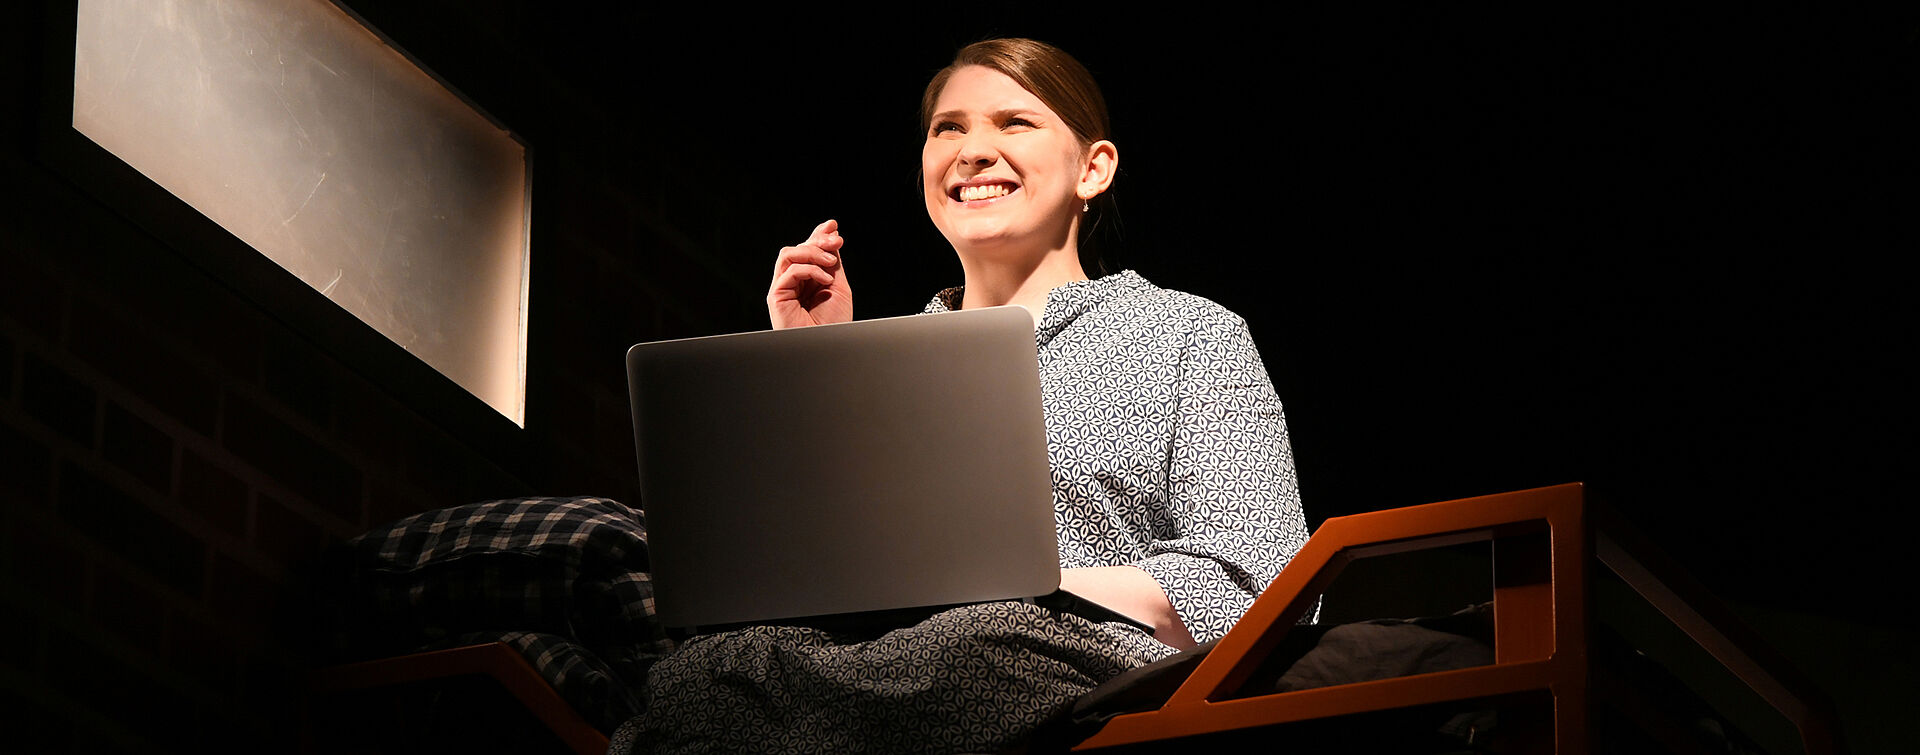 Lena Becker sitzt mit einem Laptop im Schoß auf einem Hochbett und hört Musik, dabei schnippst sie mit den Fingern. Sie trägt ein blau-weiß gemustertes Kleid.